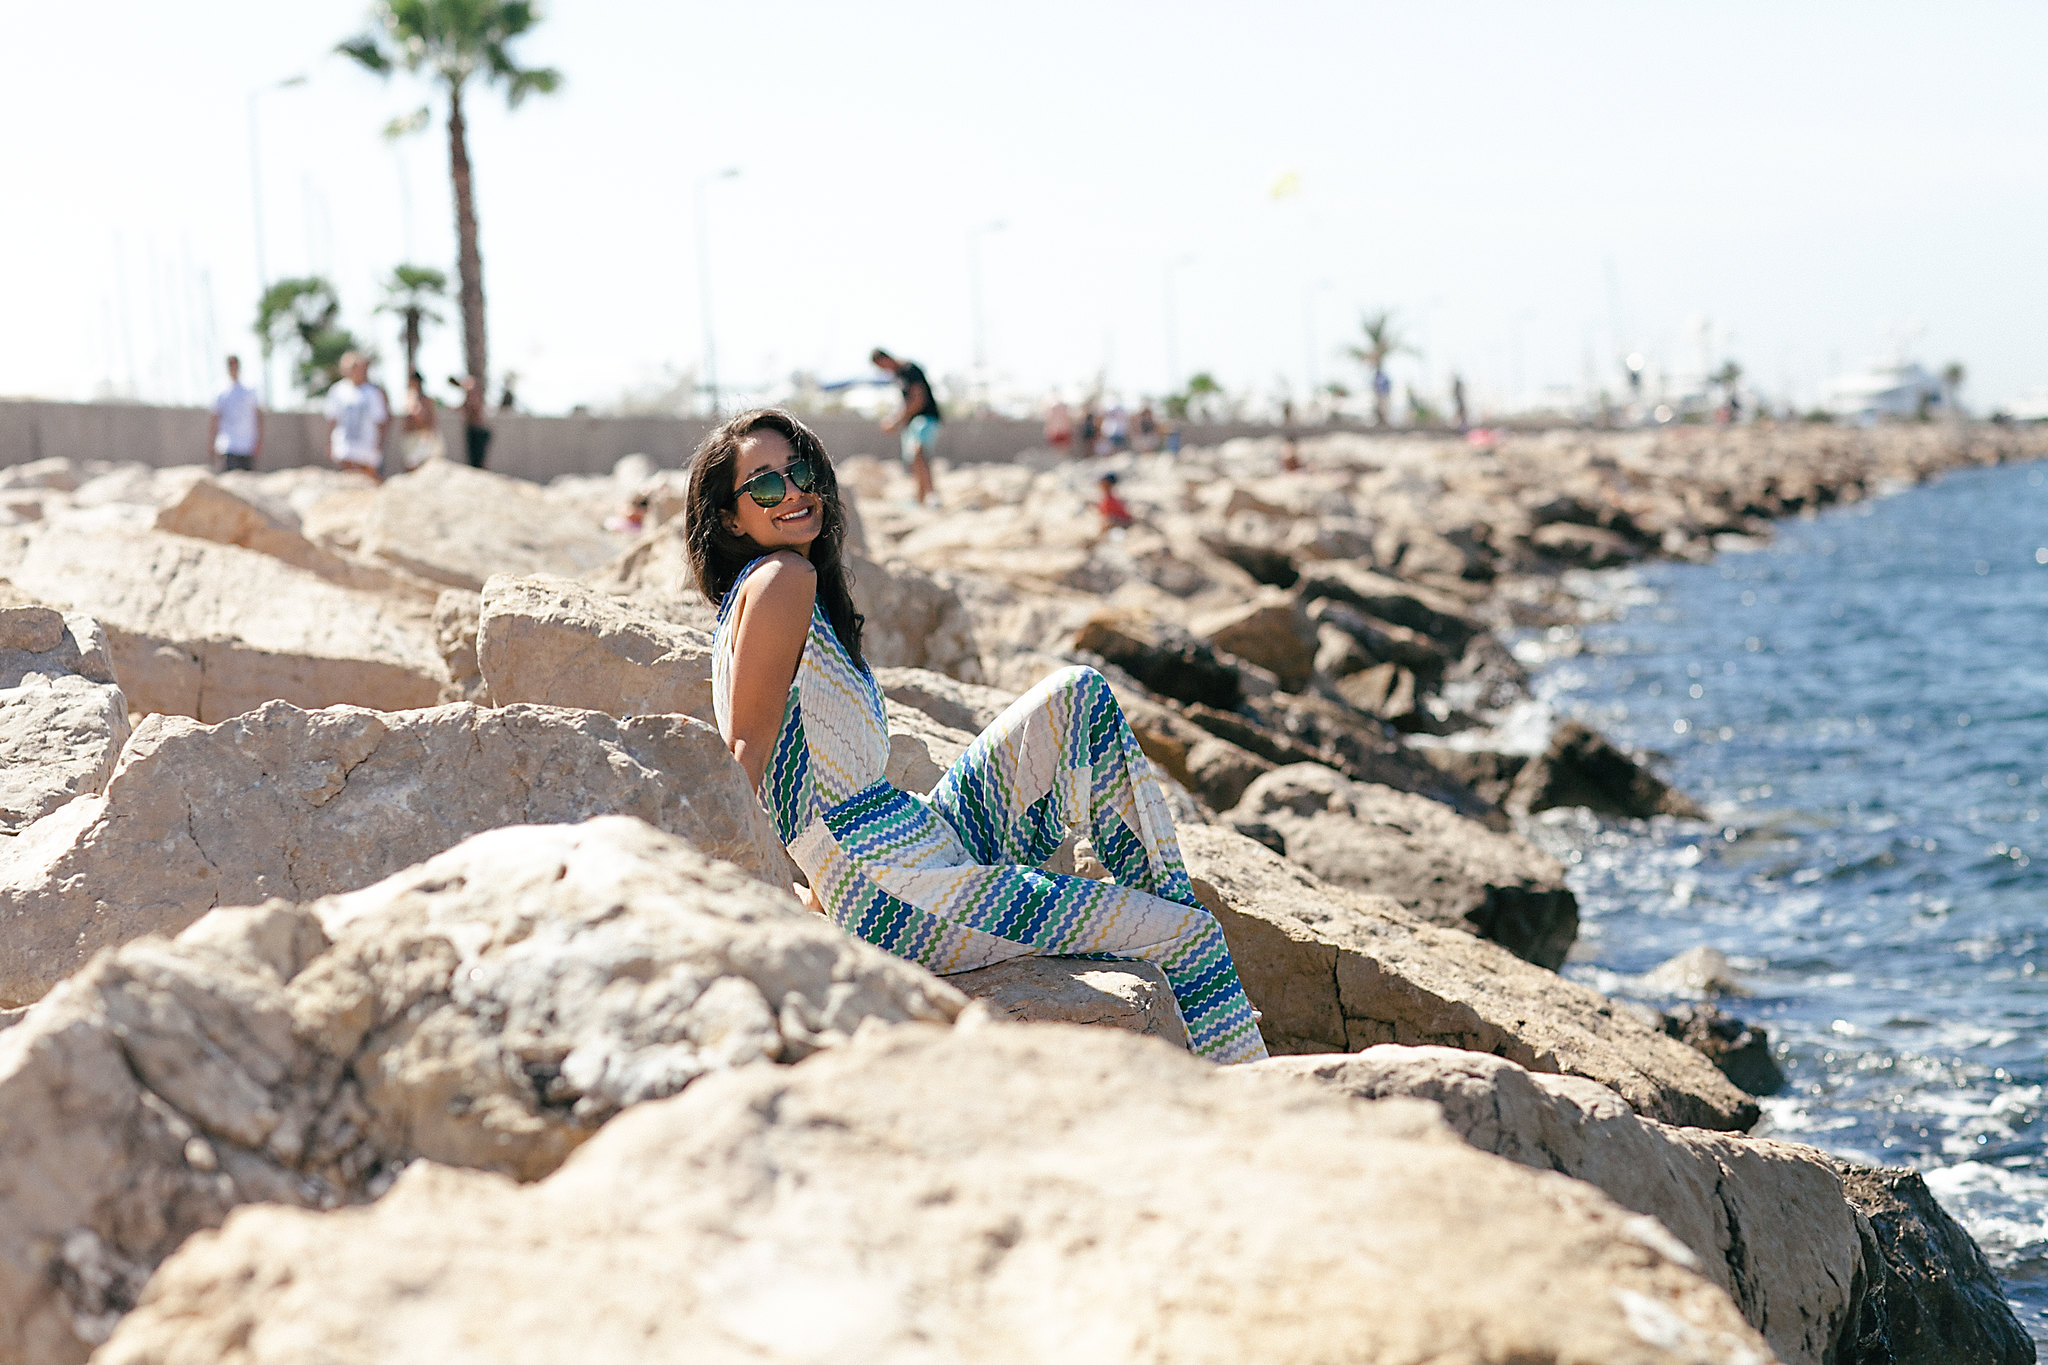 Lana El Sahely in Cannes